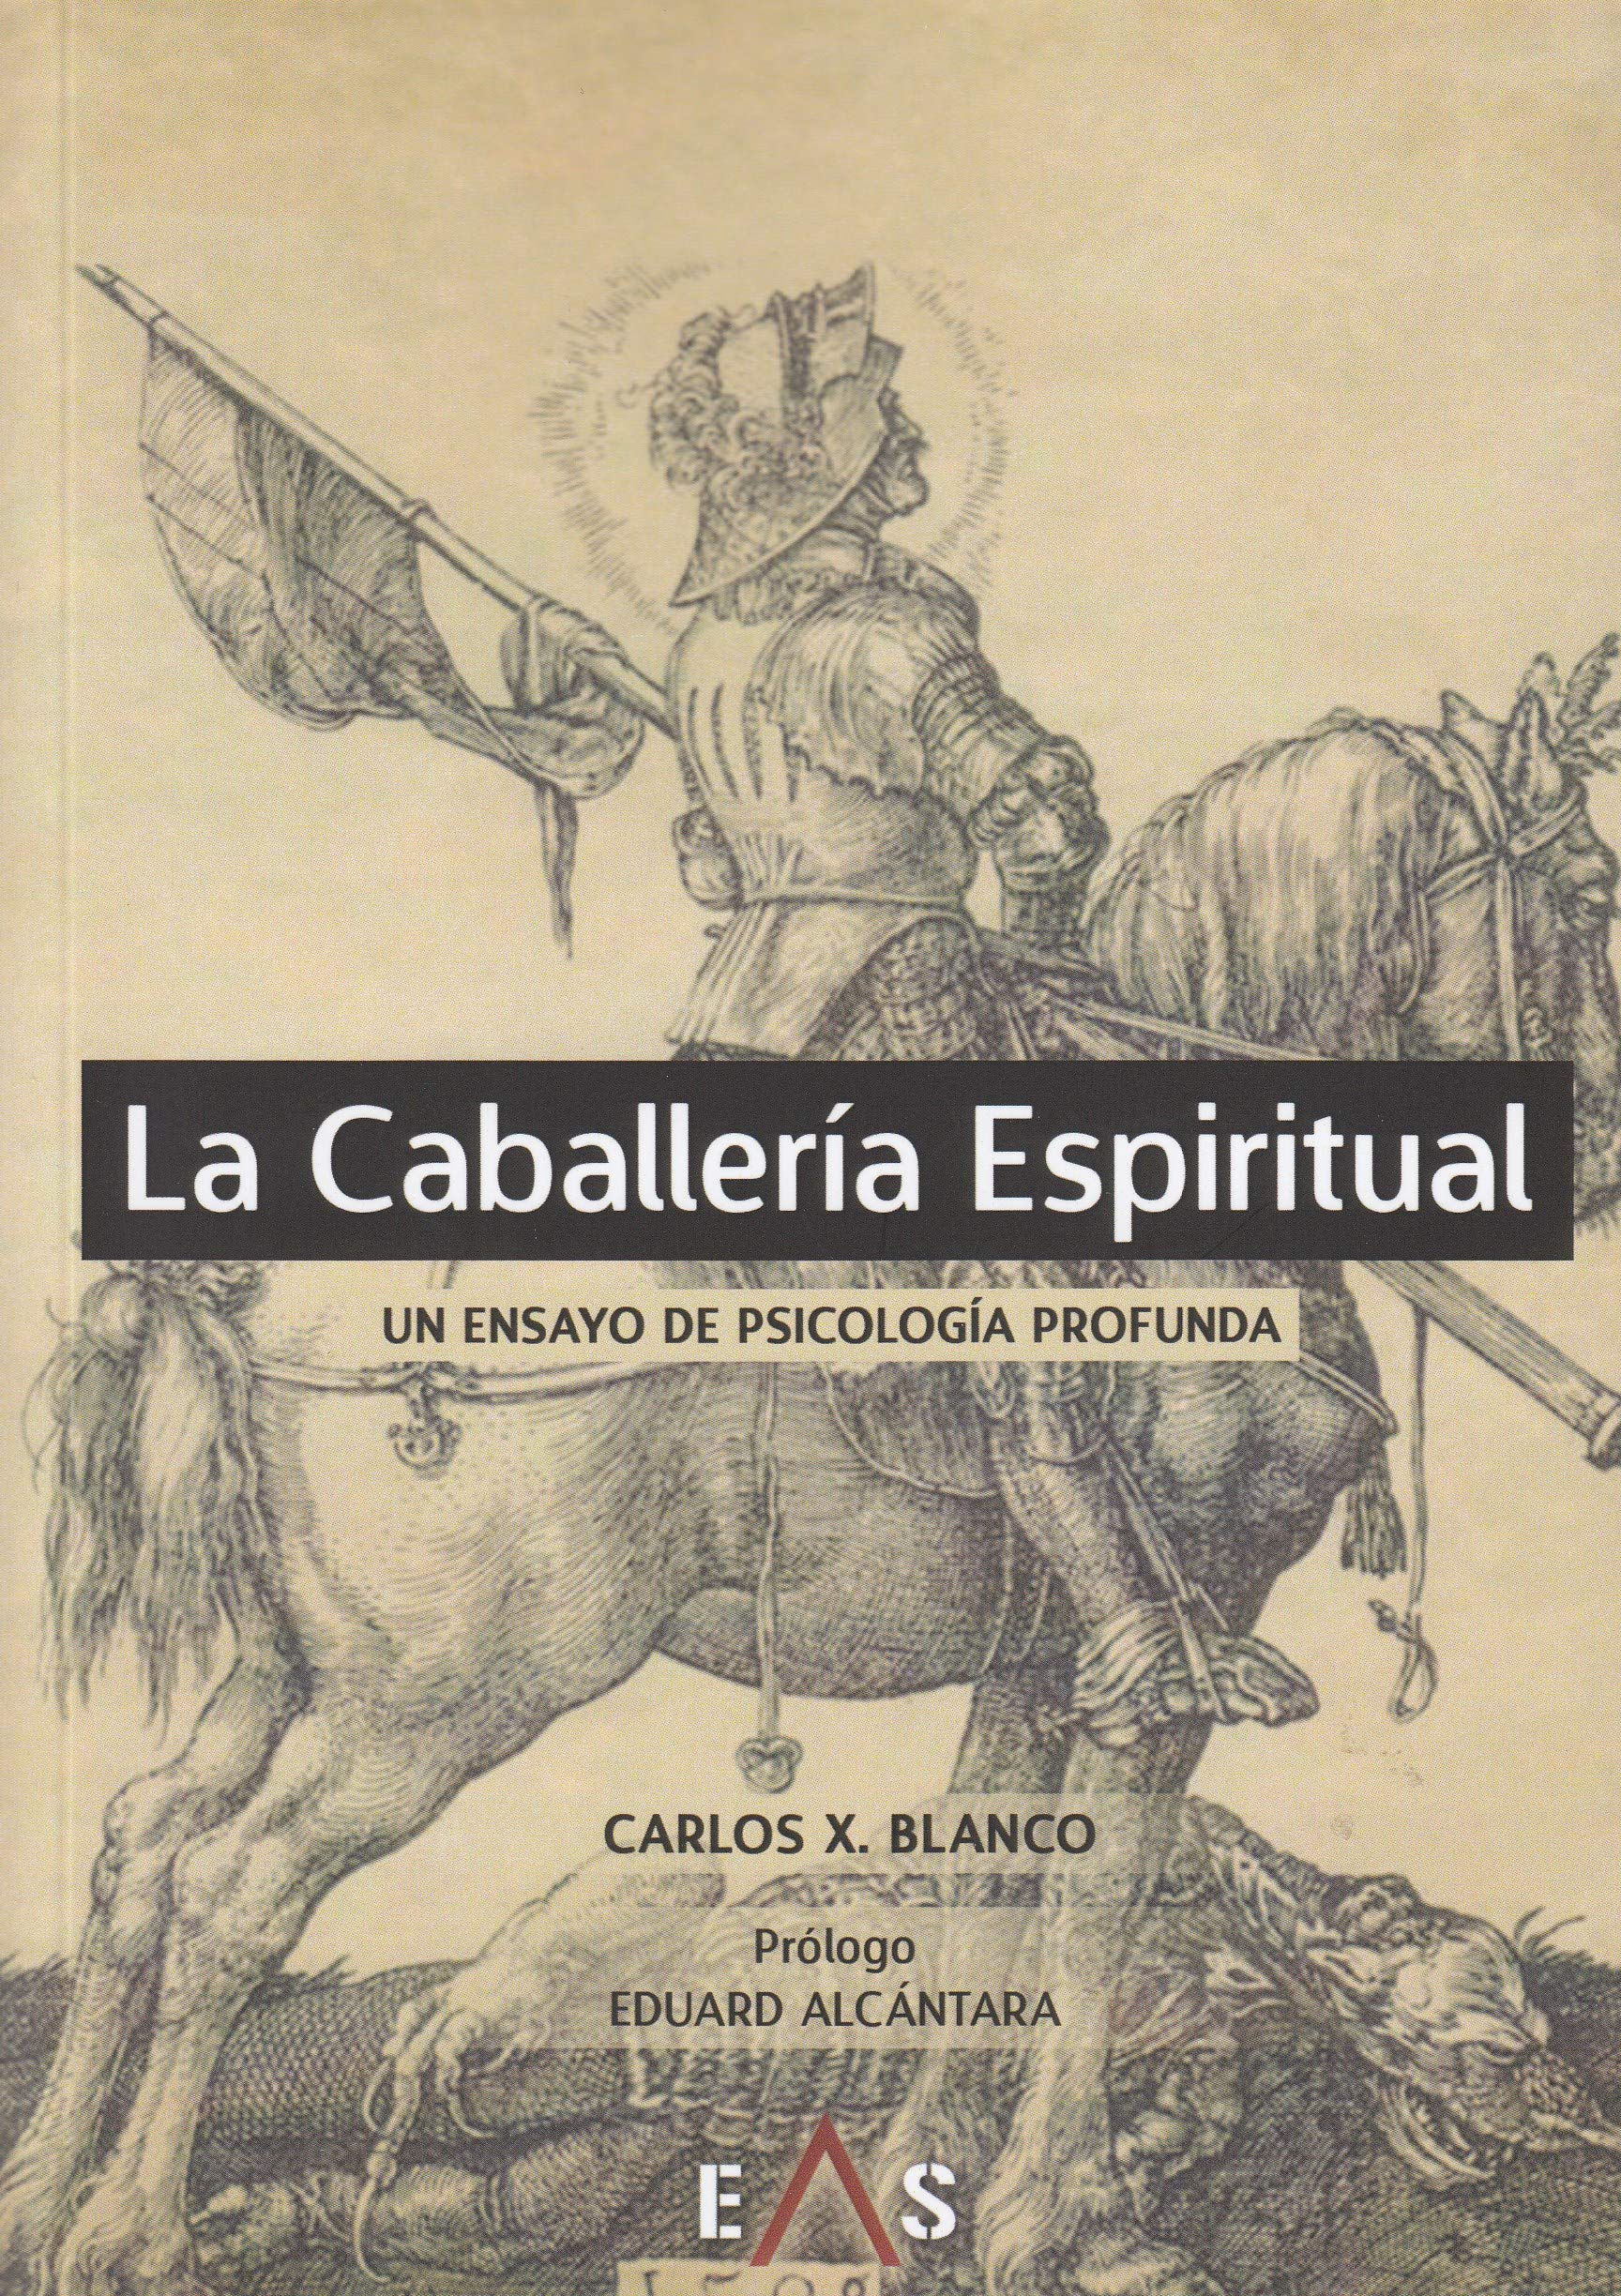 La caballería espiritual: Un ensayo de psicología profunda, de Carlos X. Blanco